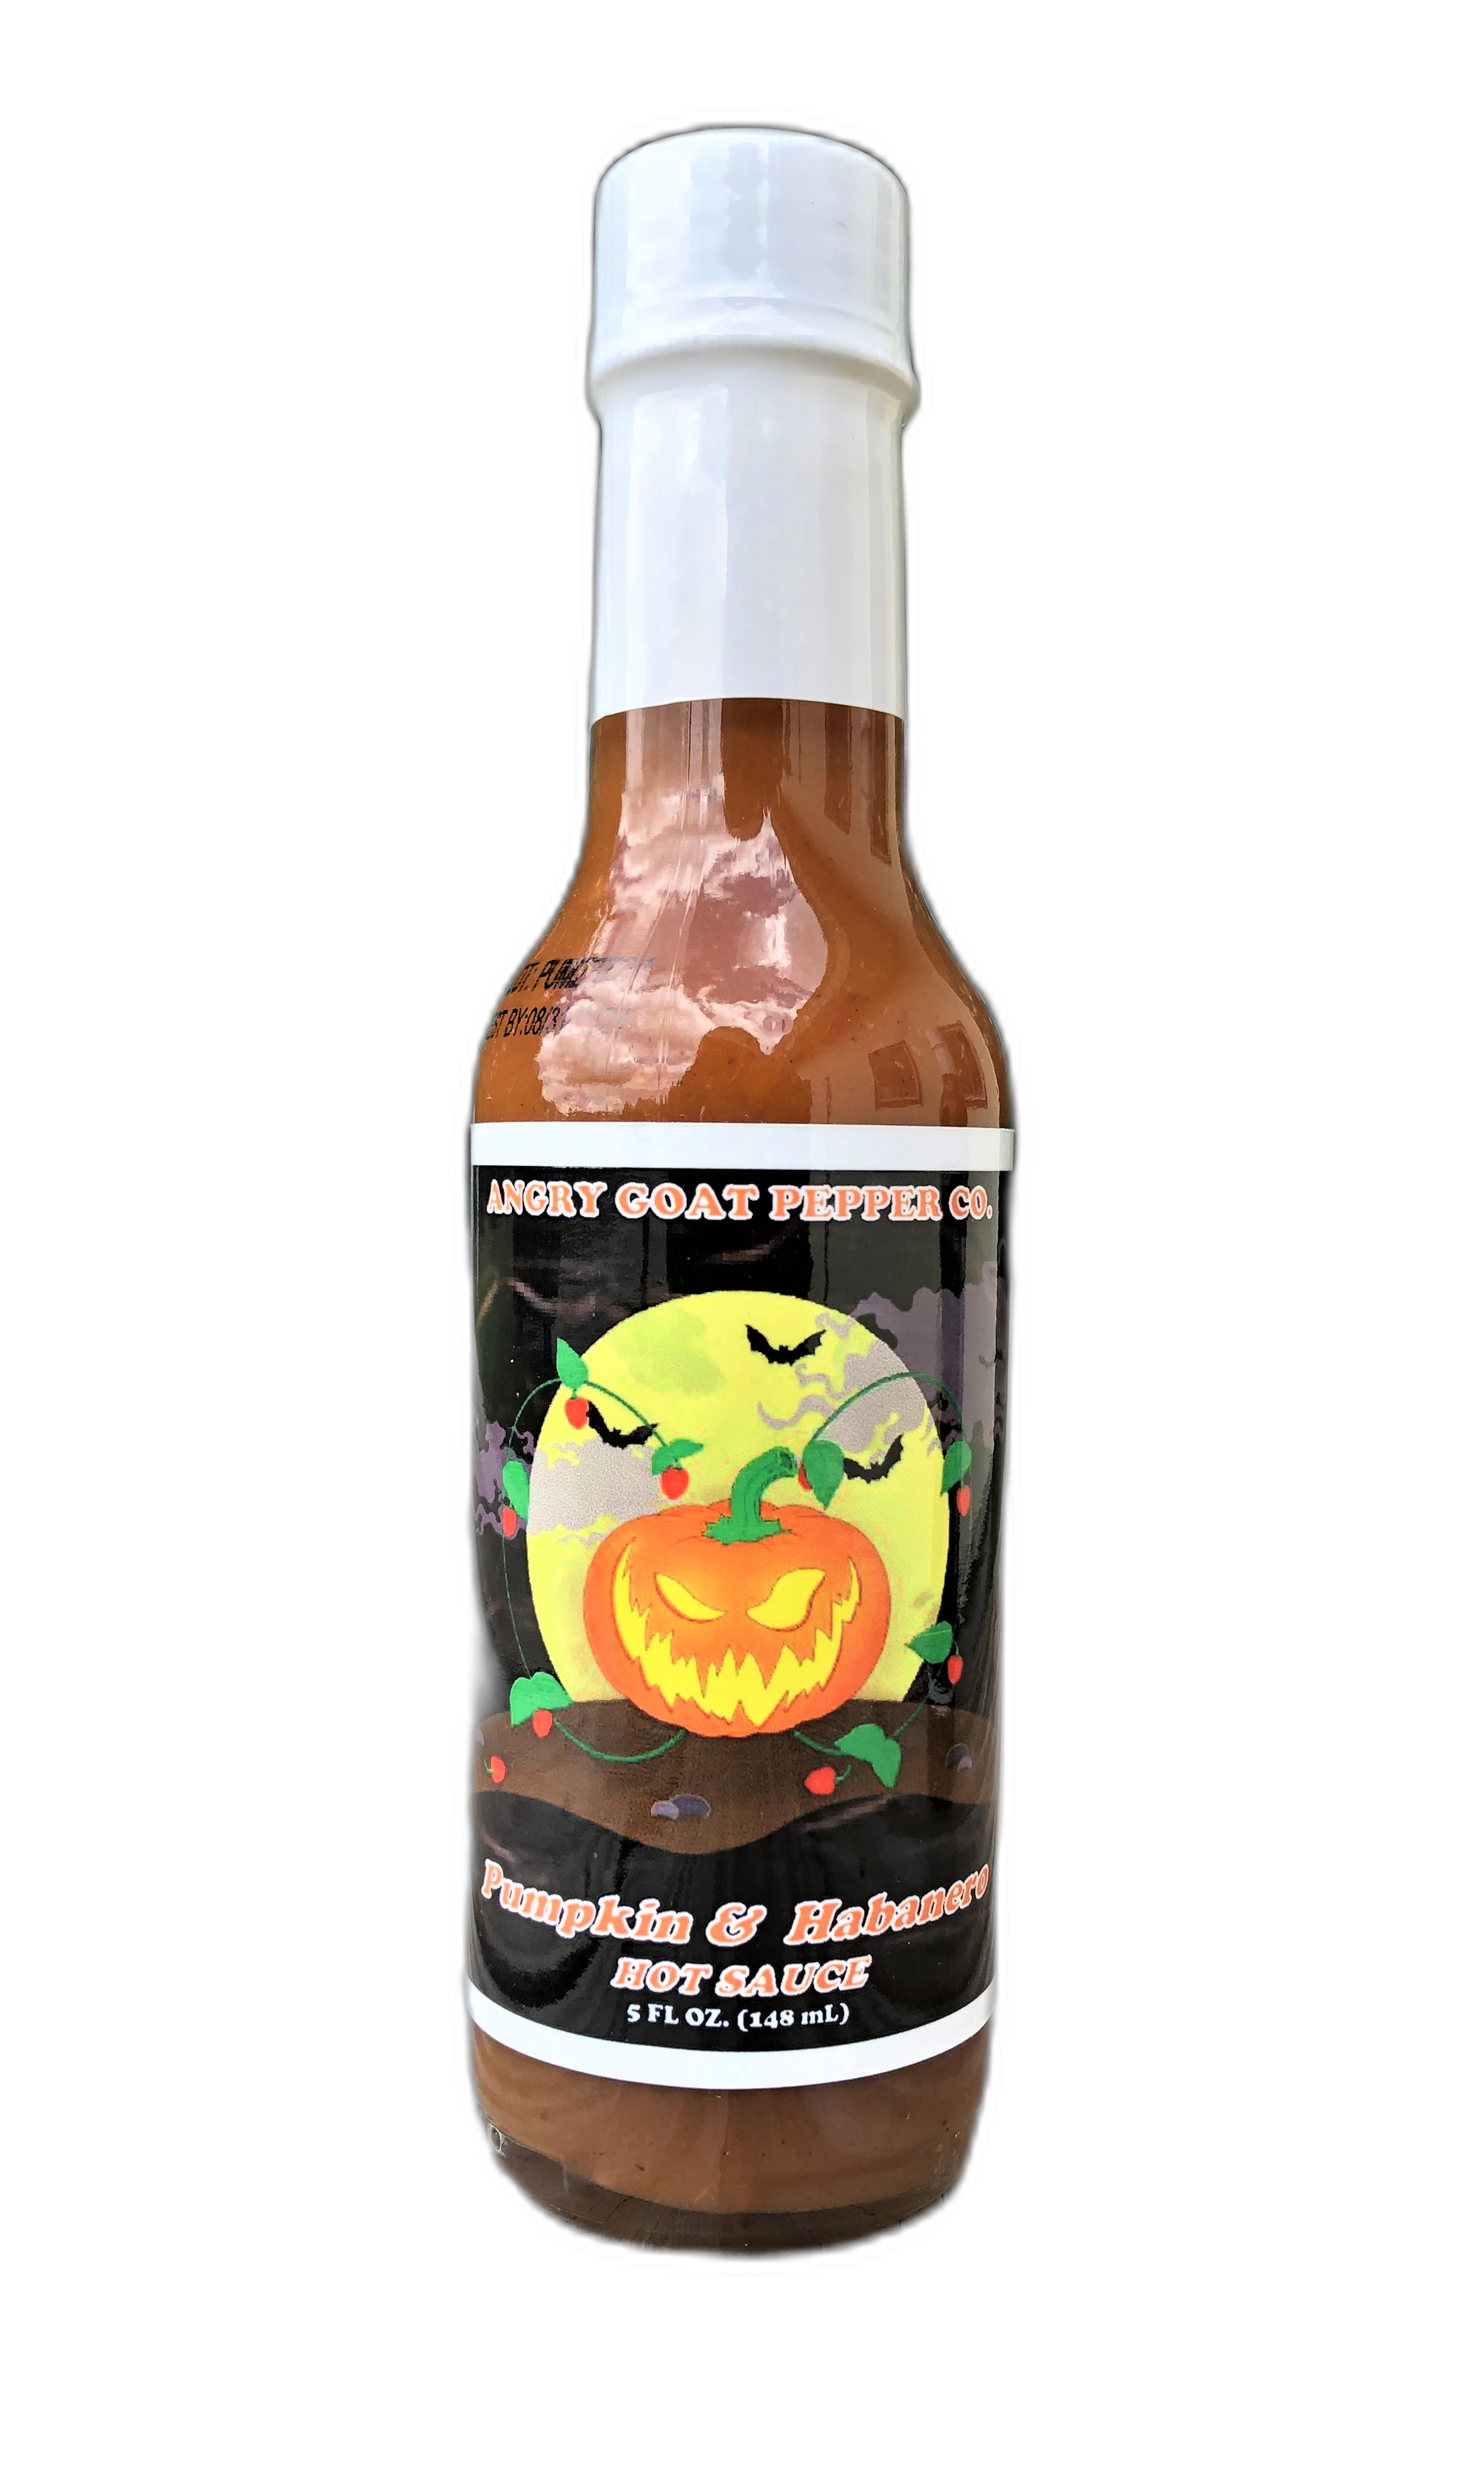 Louisiana Habanero Hot Sauce Review